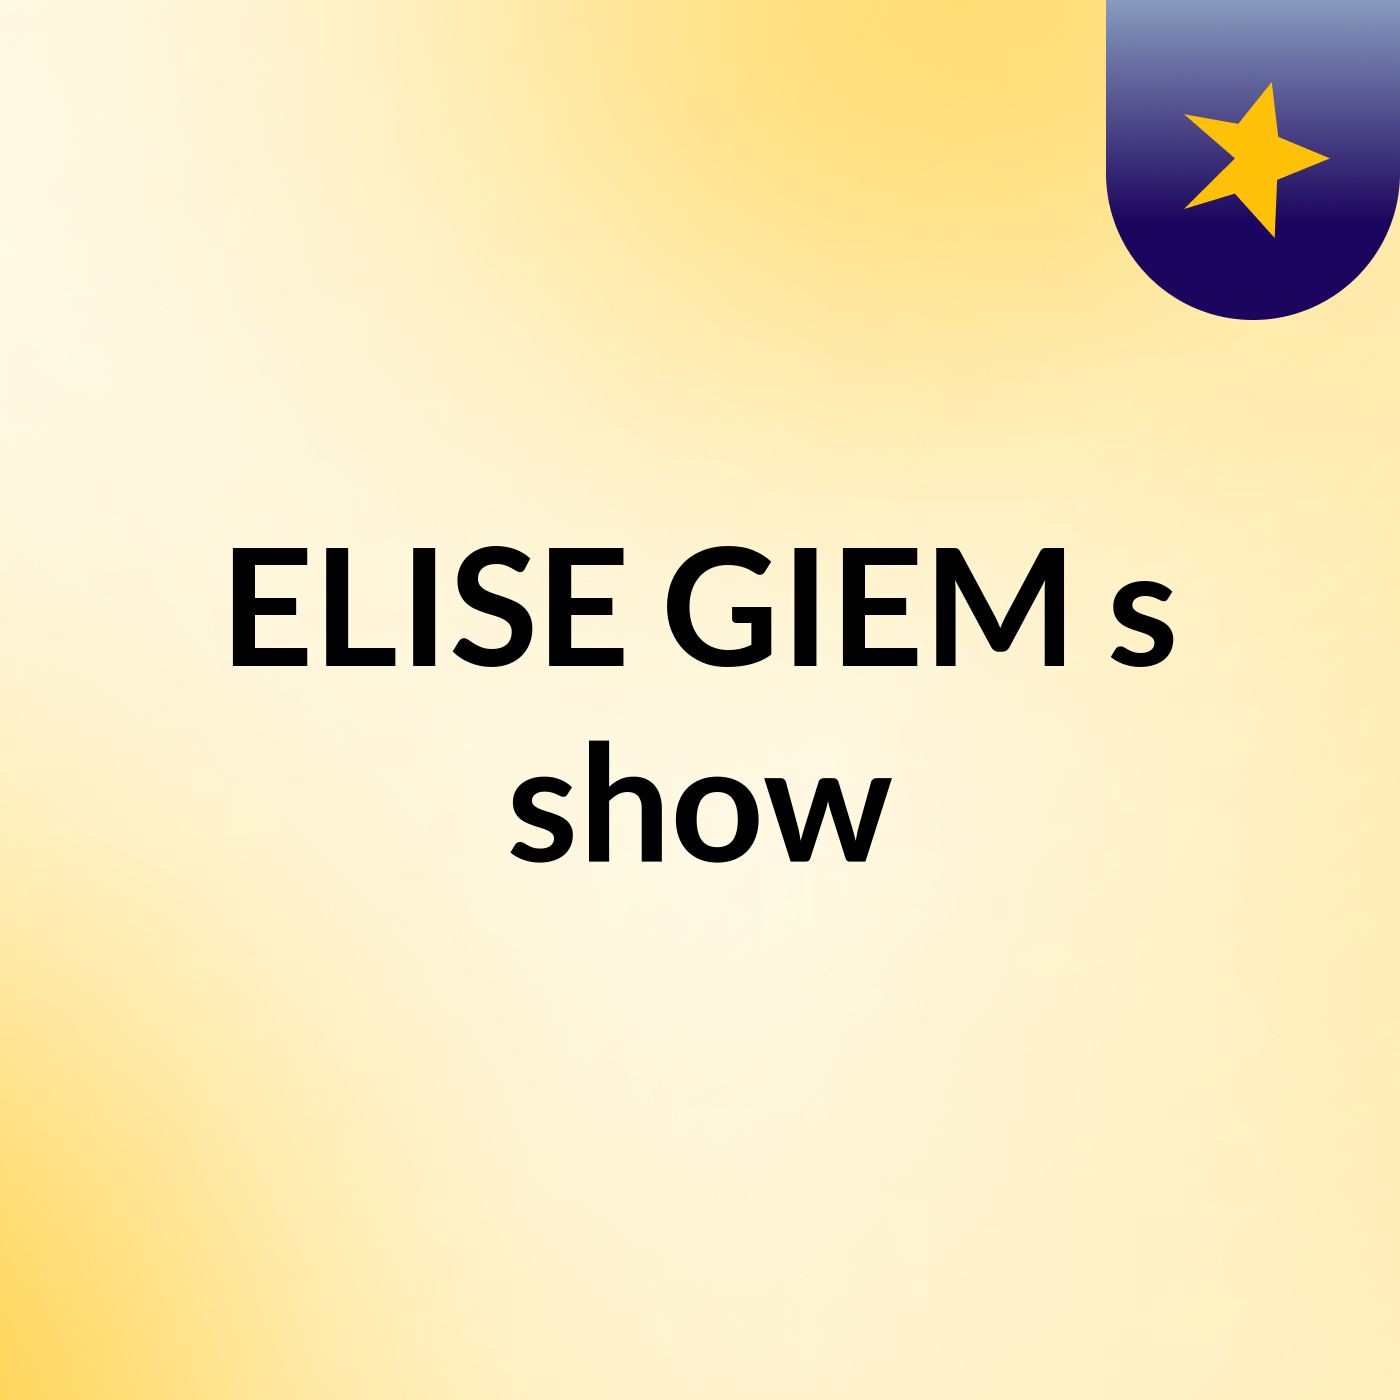 Episode 2 - ELISE GIEM's show